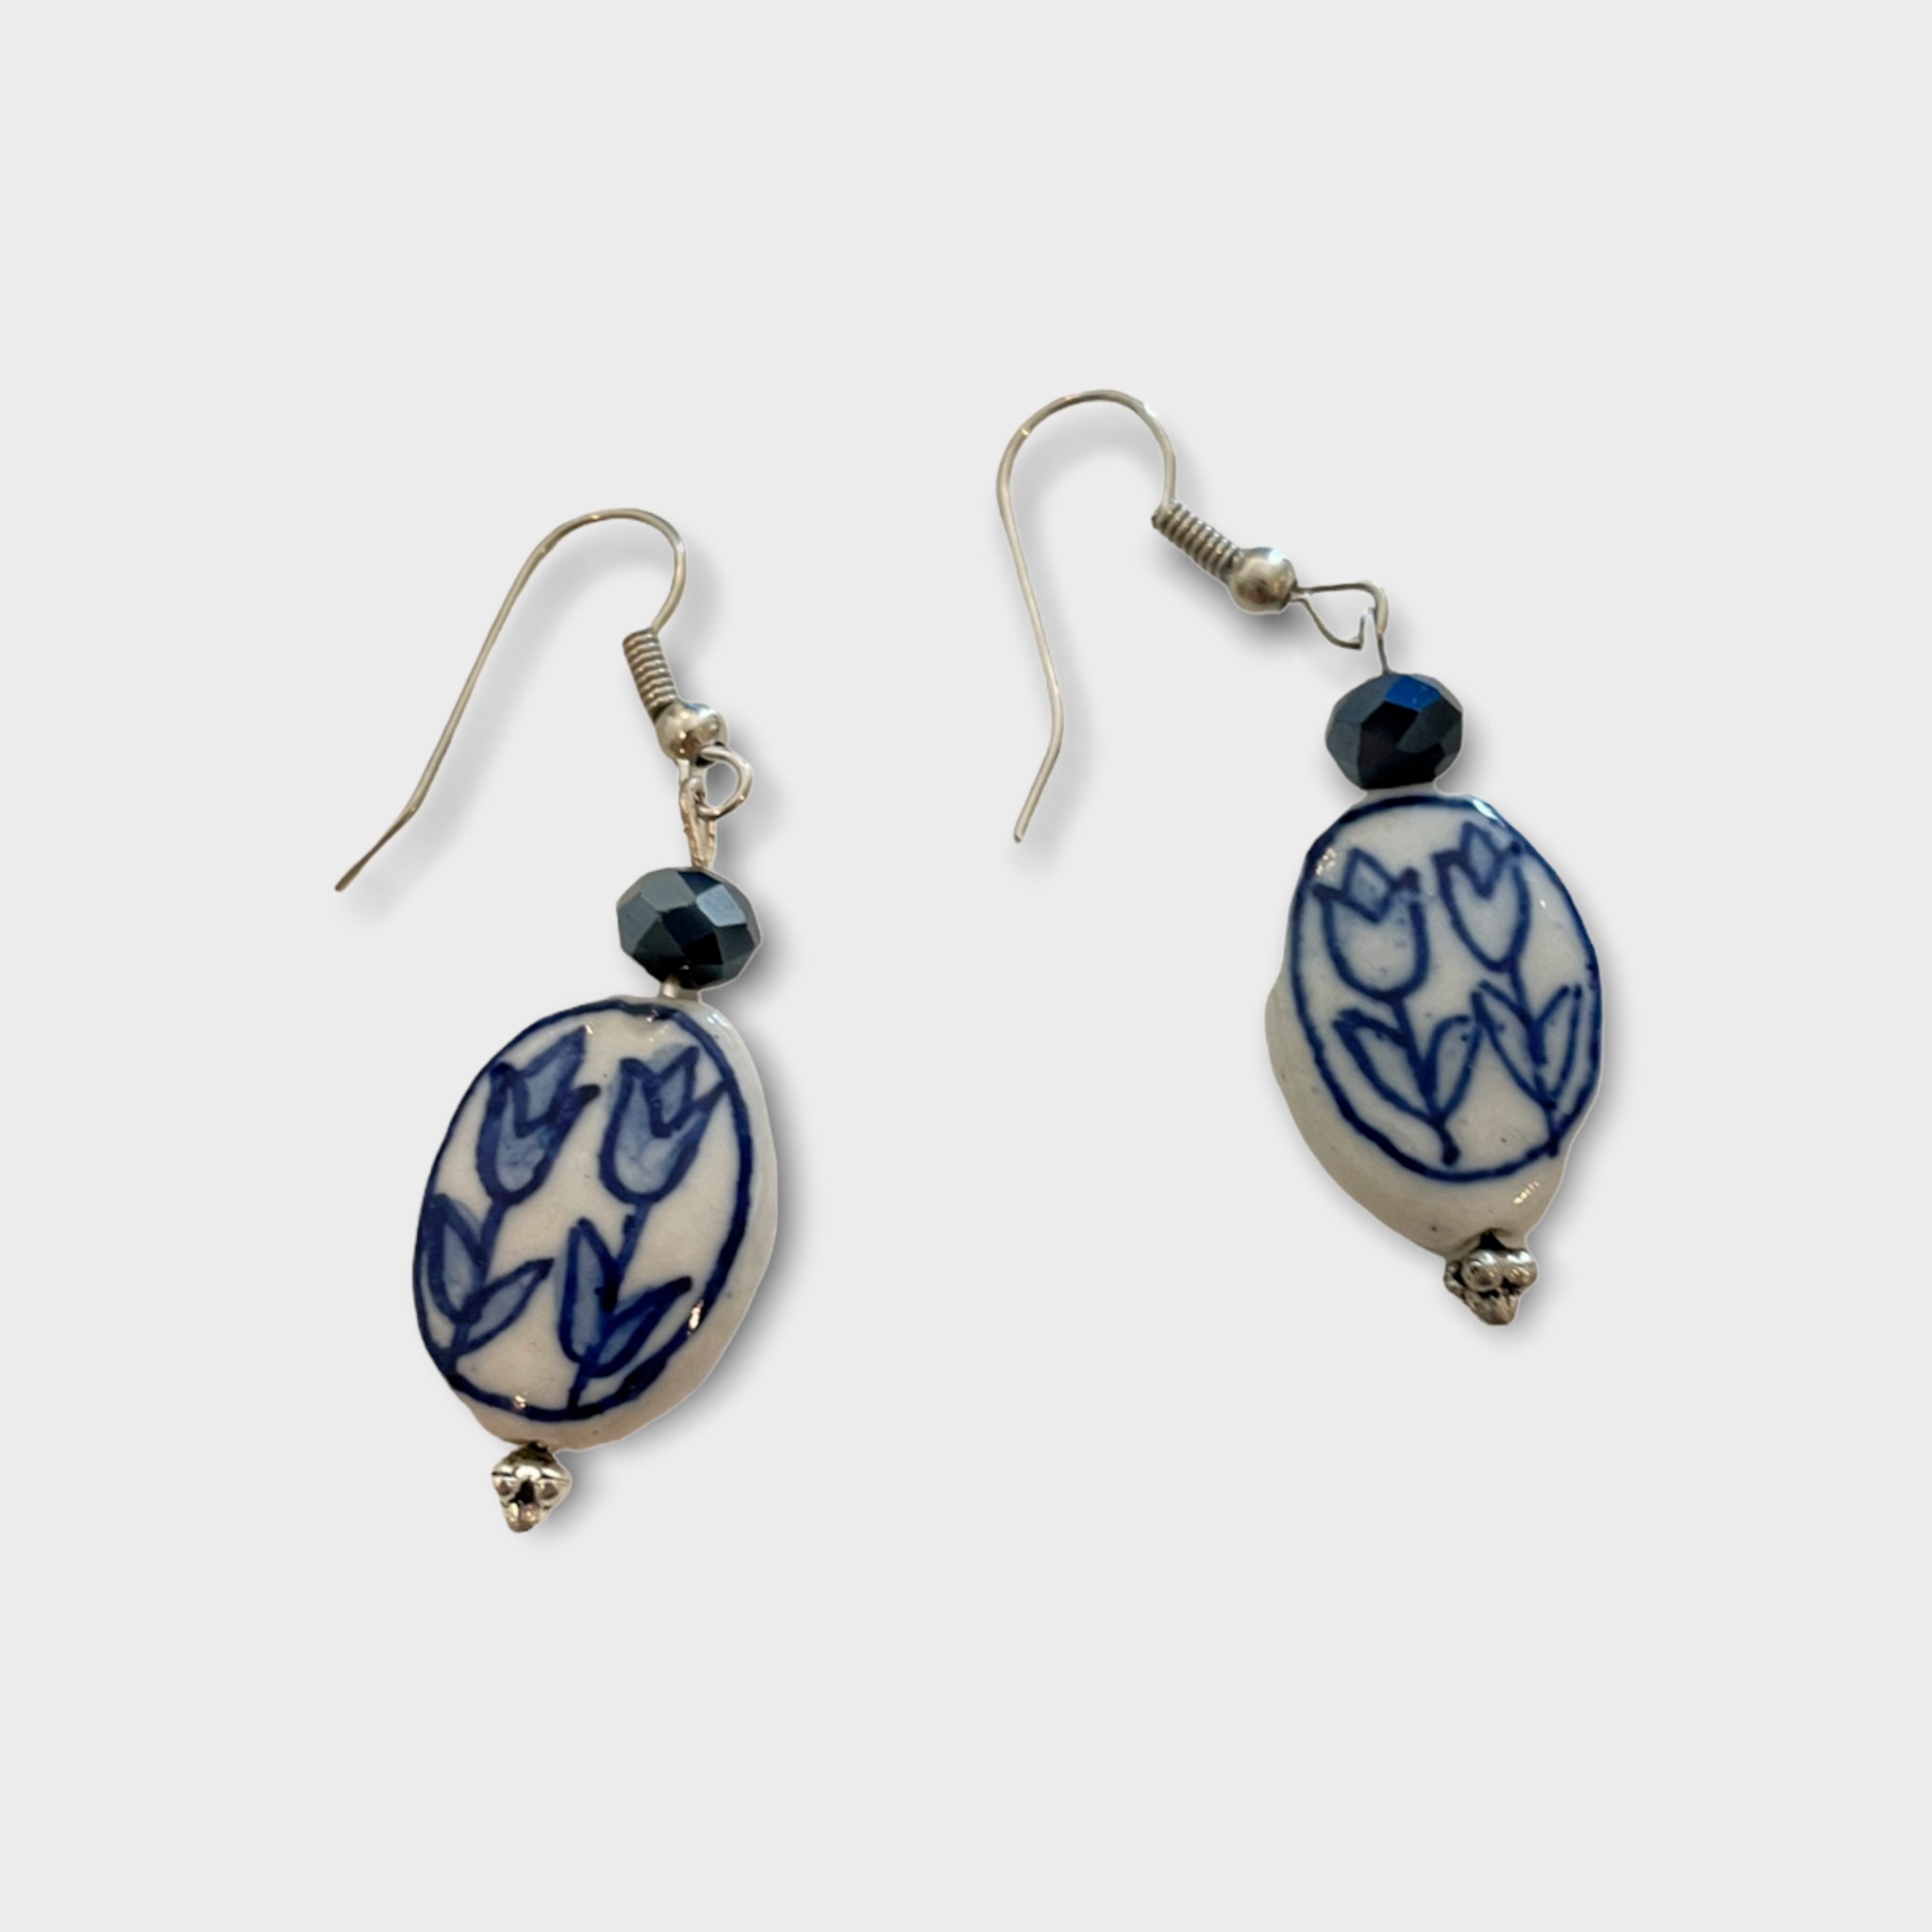 Delft blue ceramic set of bracelet and earrings TULIP